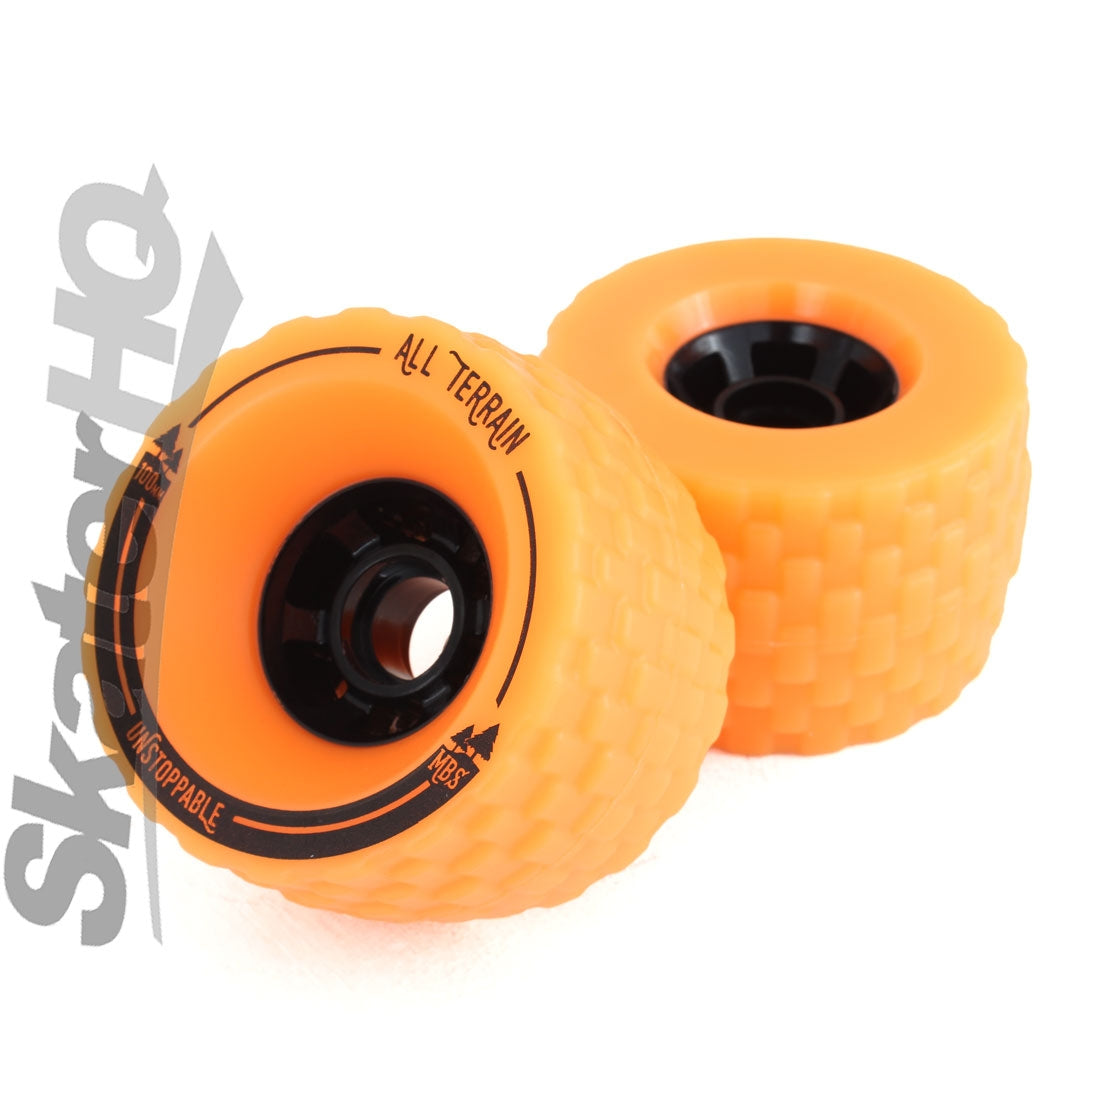 MBS All-Terrain 100mm Wheels 4pk - Orange Skateboard Wheels